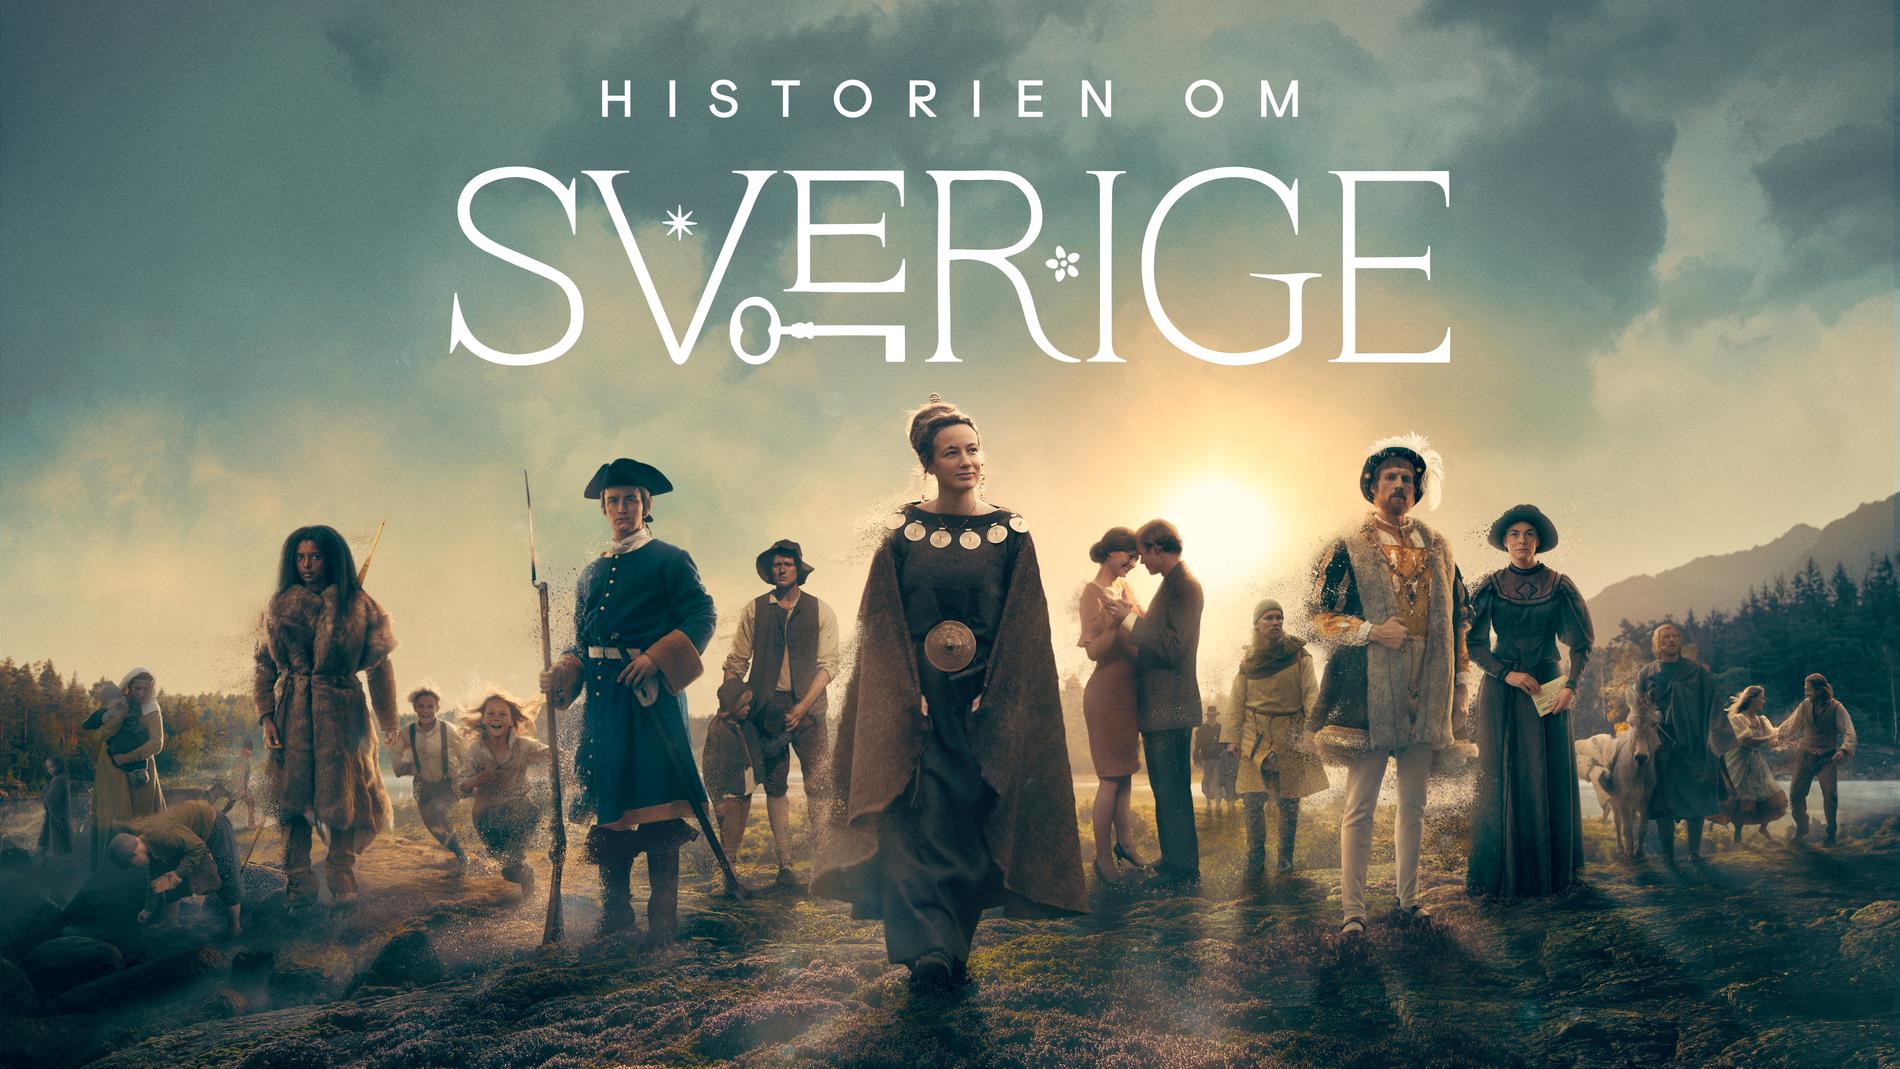 ”Historien om Sverige”